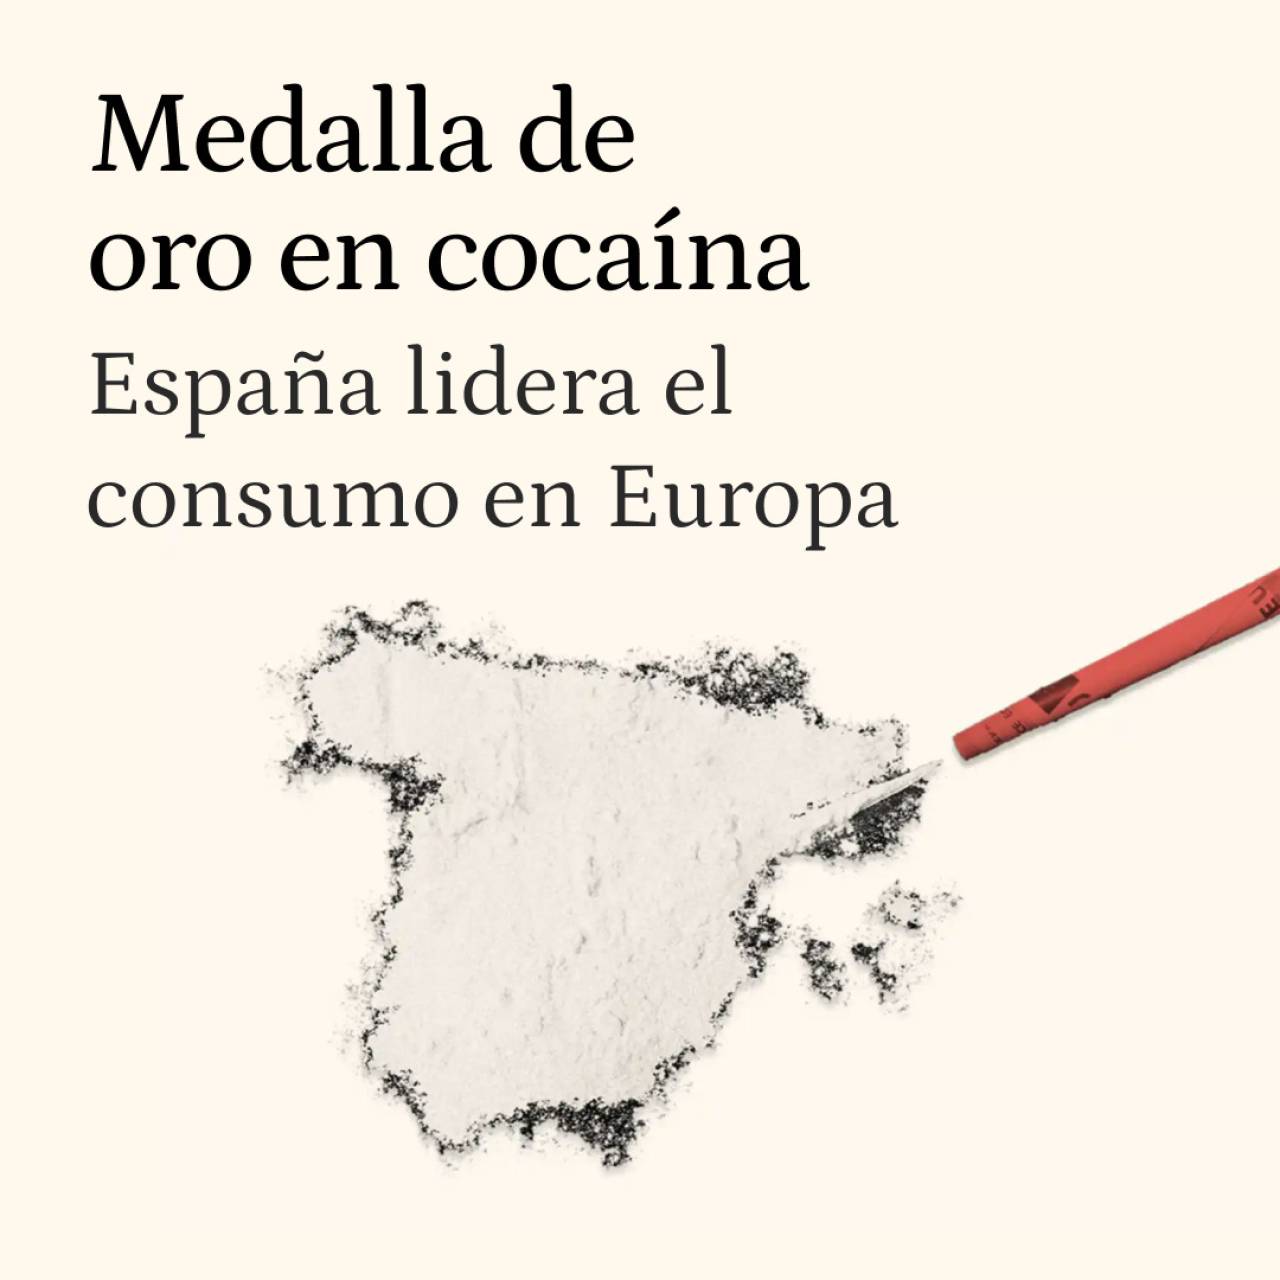 España, campeona de Europa en consumo de cocaína: así es el 'método Minnesota' para dejarla